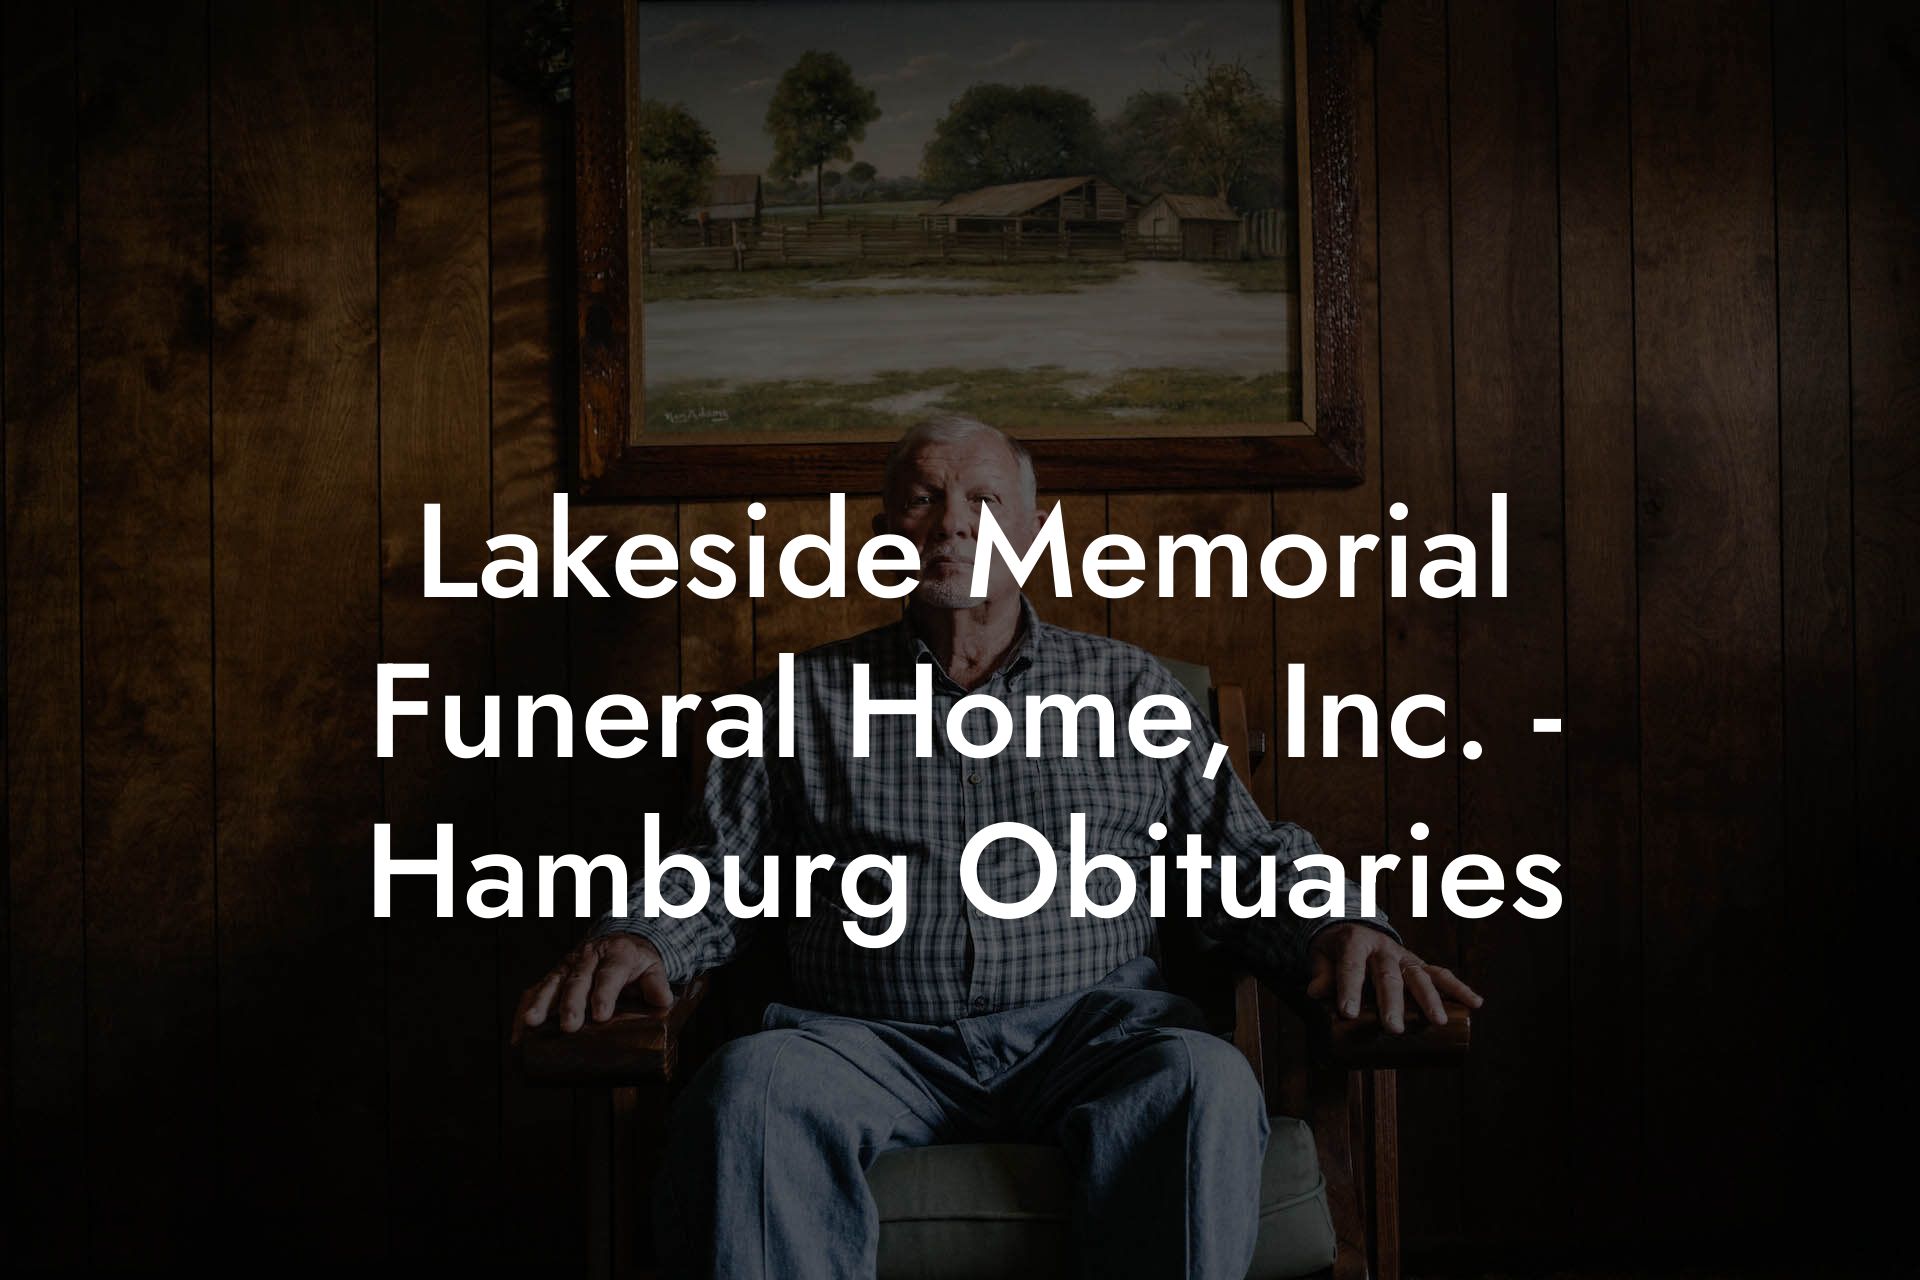 Lakeside Memorial Funeral Home, Inc. - Hamburg Obituaries